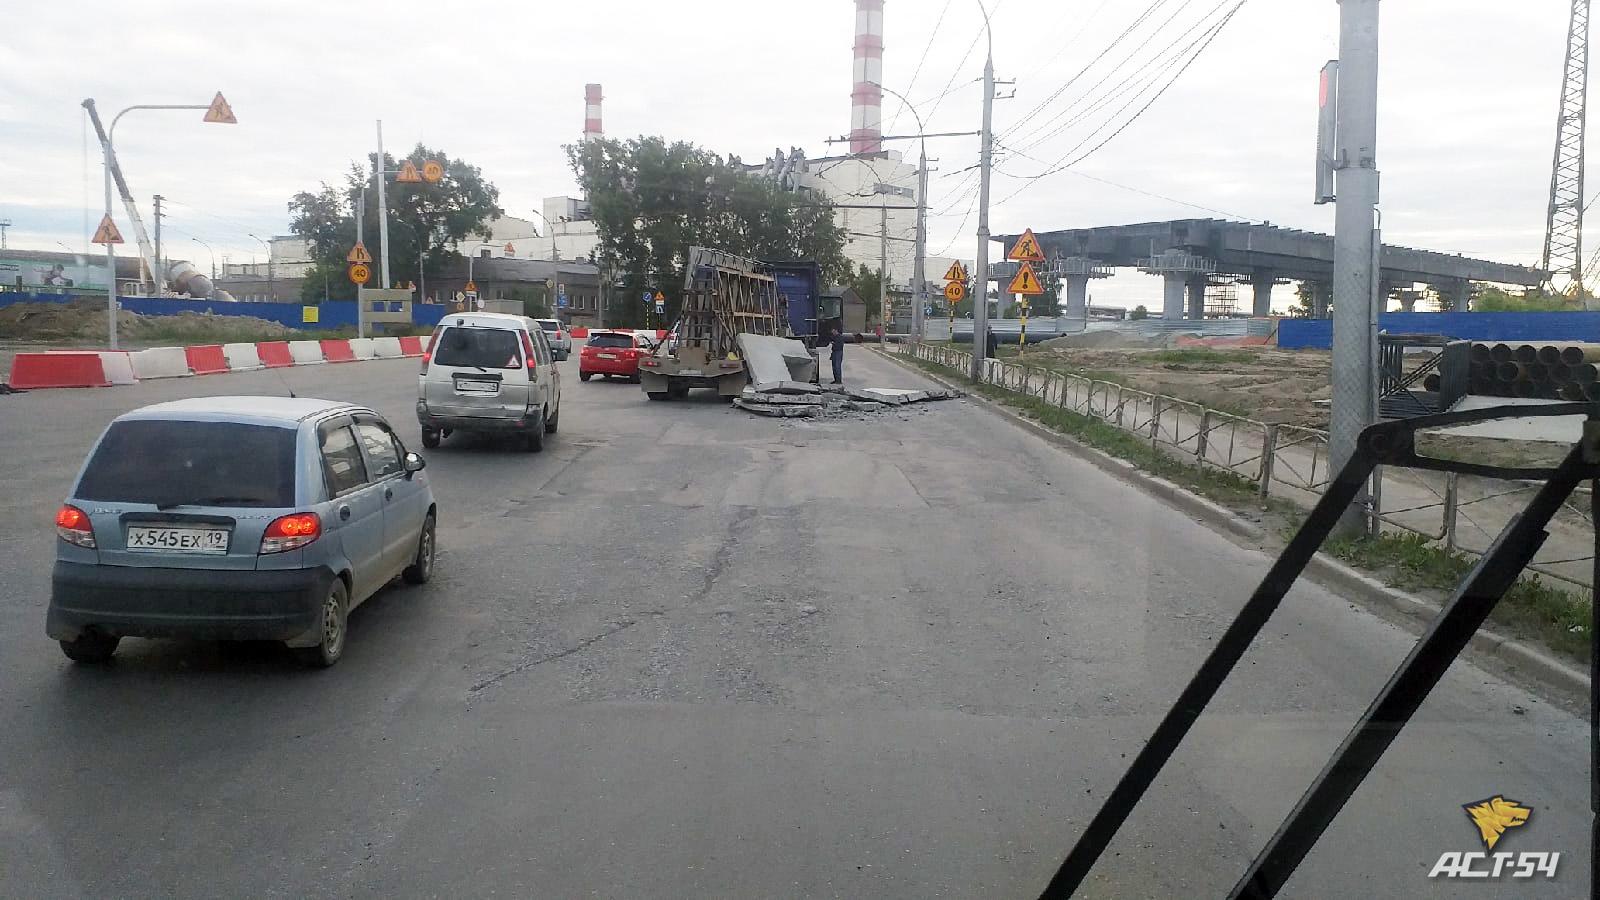 Фото Бетонные плиты рассыпались по дороге после ДТП с троллейбусом в Новосибирске 3